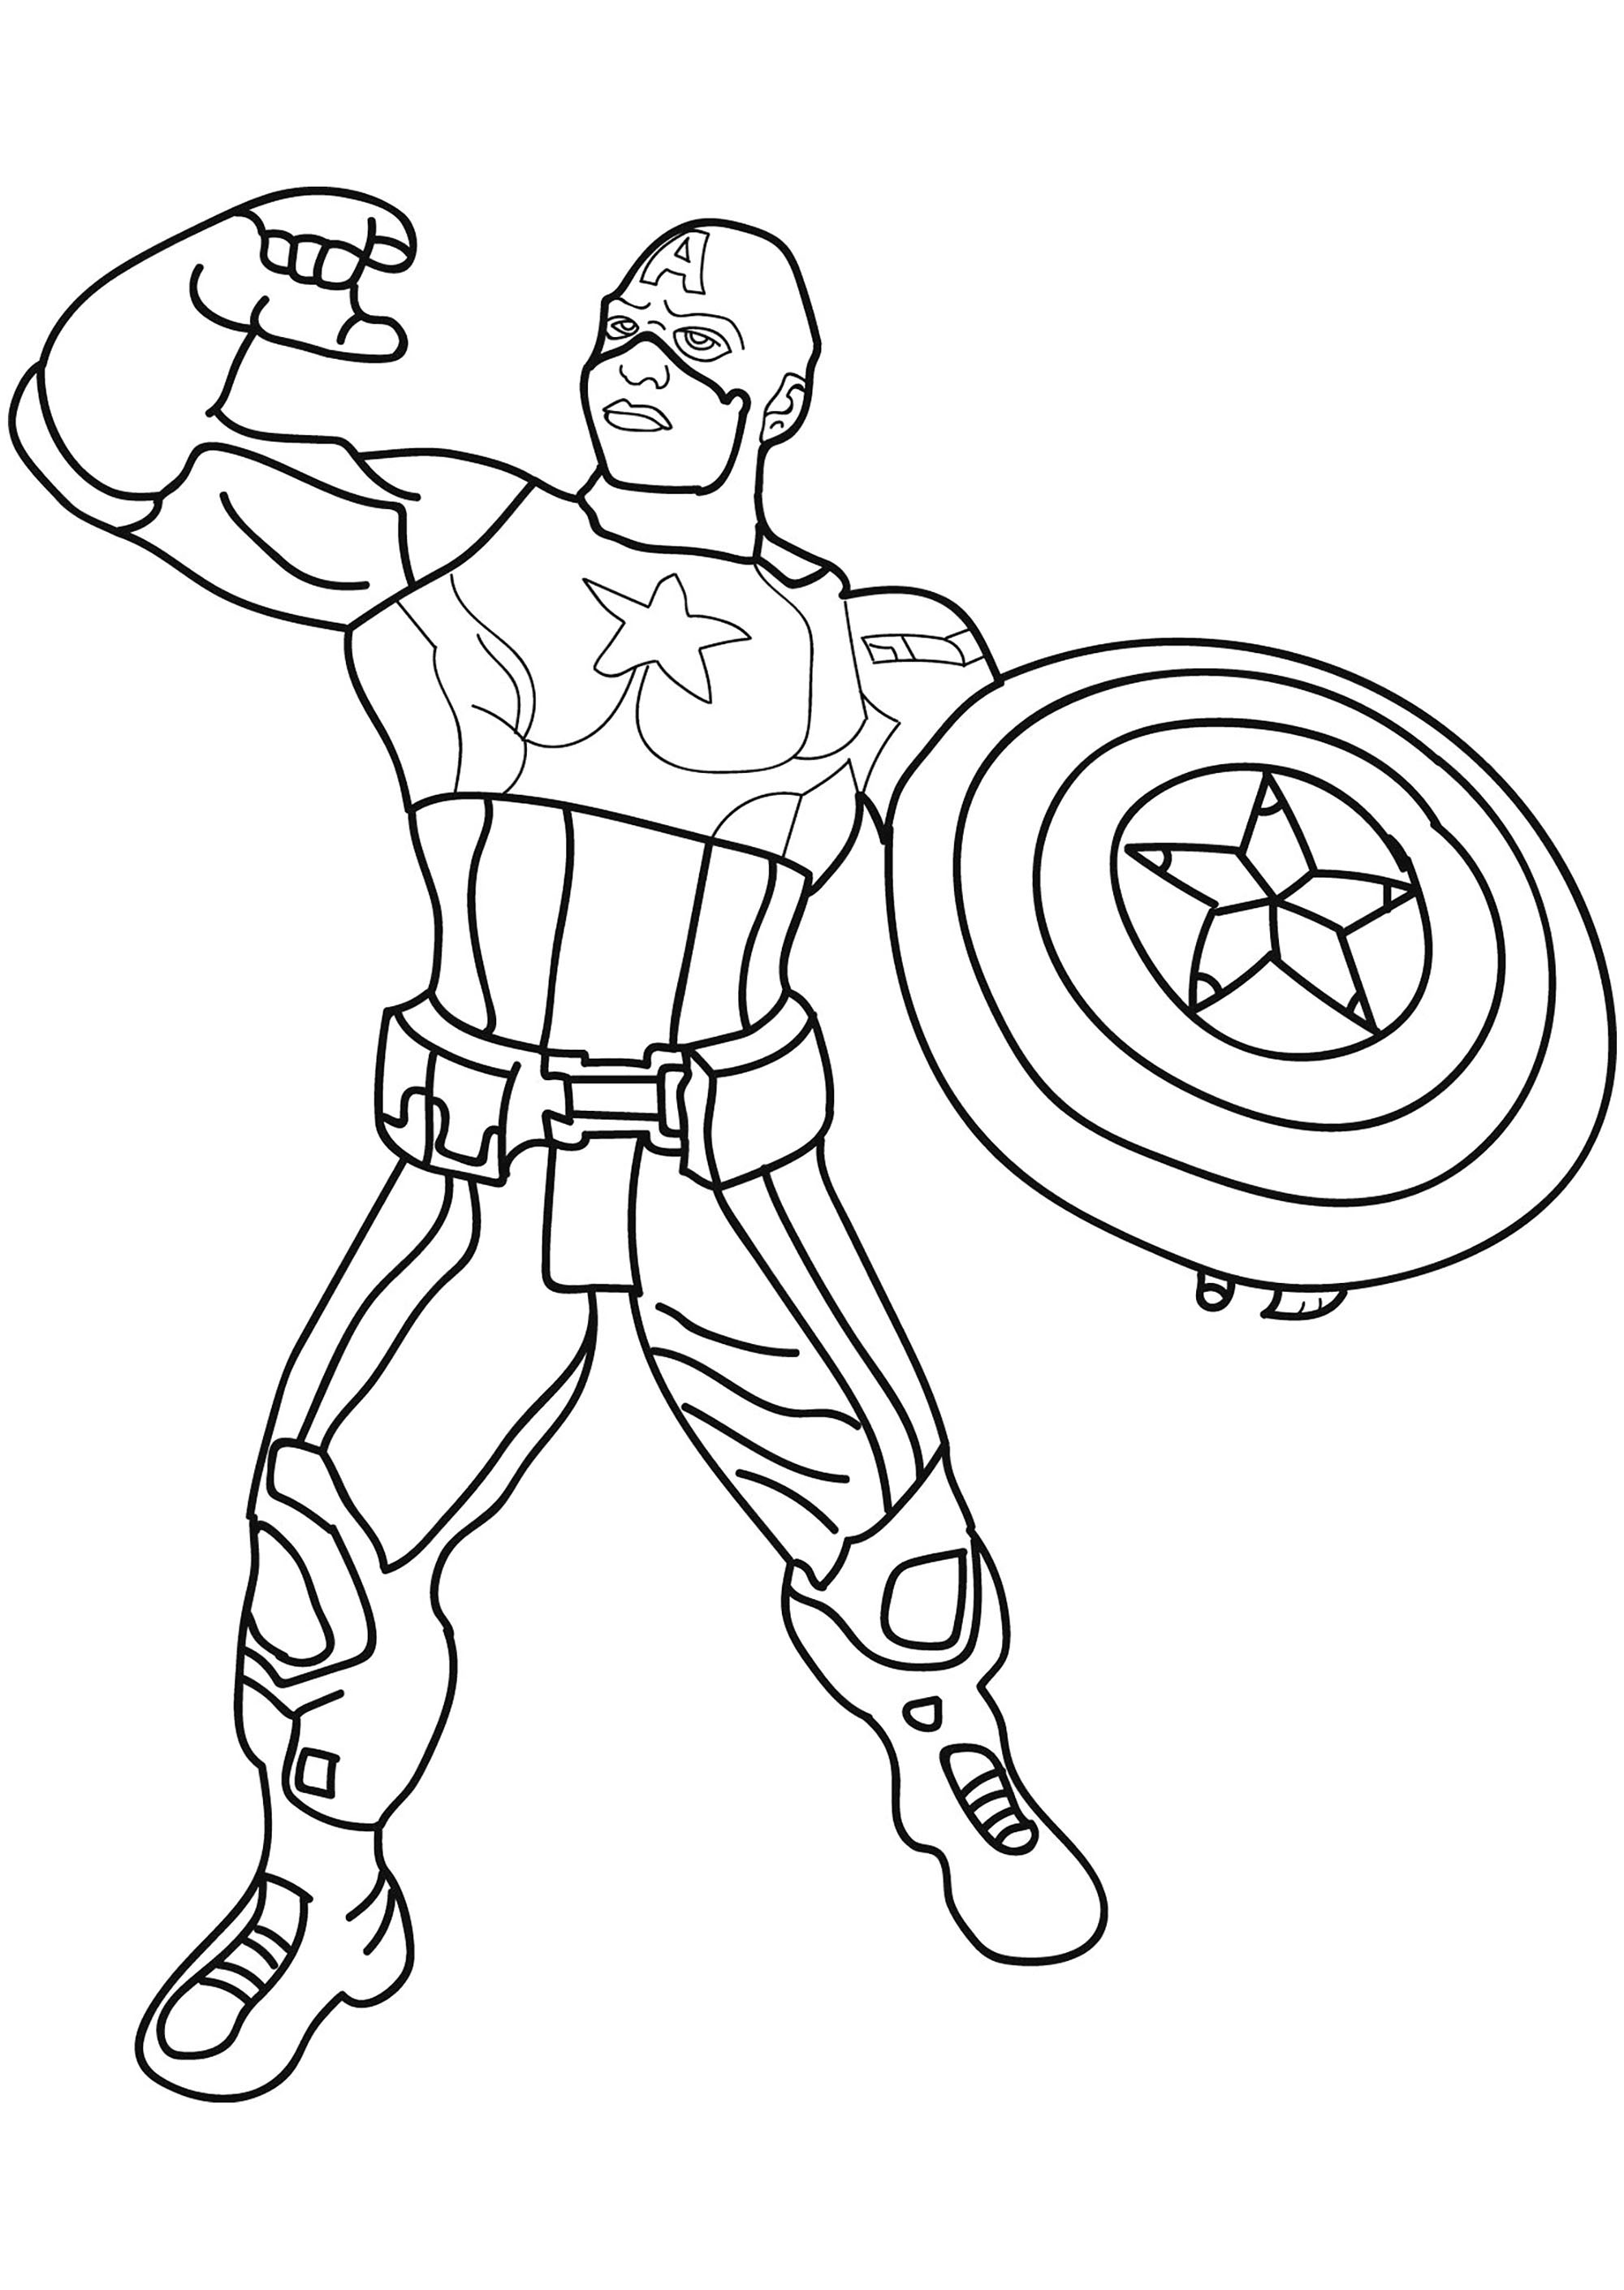 Dibujo de Capitán América para descargar e imprimir para niños